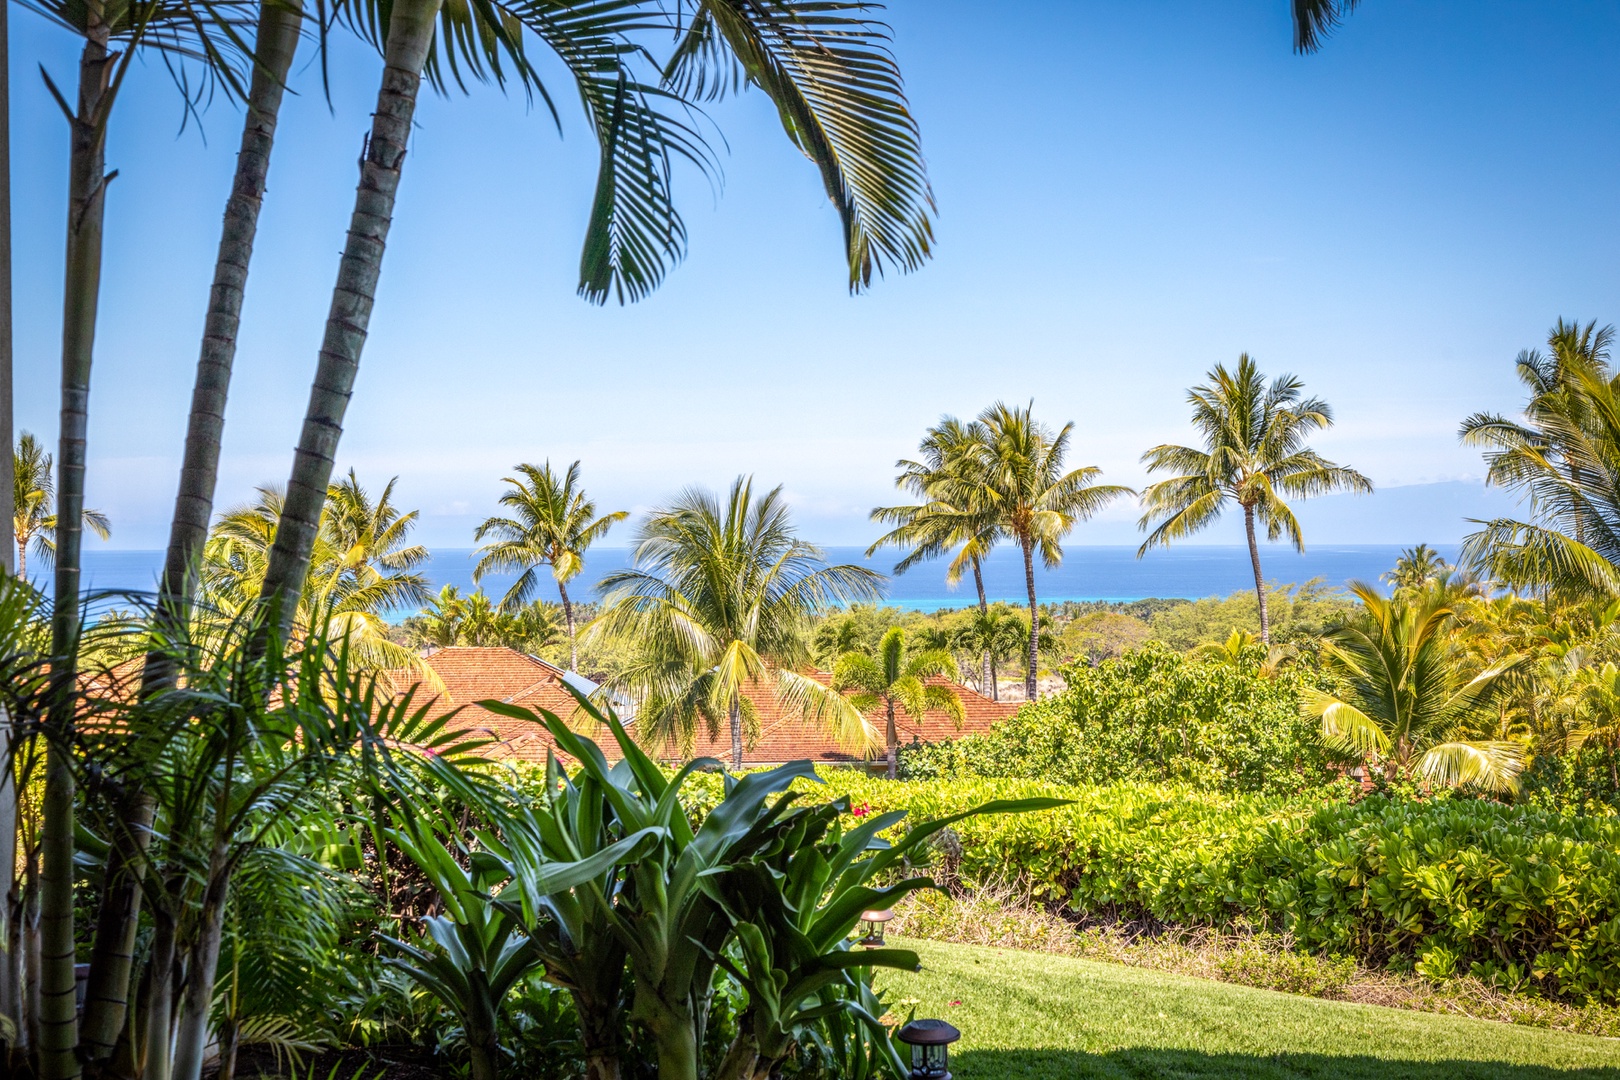 Kailua Kona Vacation Rentals, 3BD Hainoa Villa (2907C) at Four Seasons Resort at Hualalai - Views from private primary suite lanai.